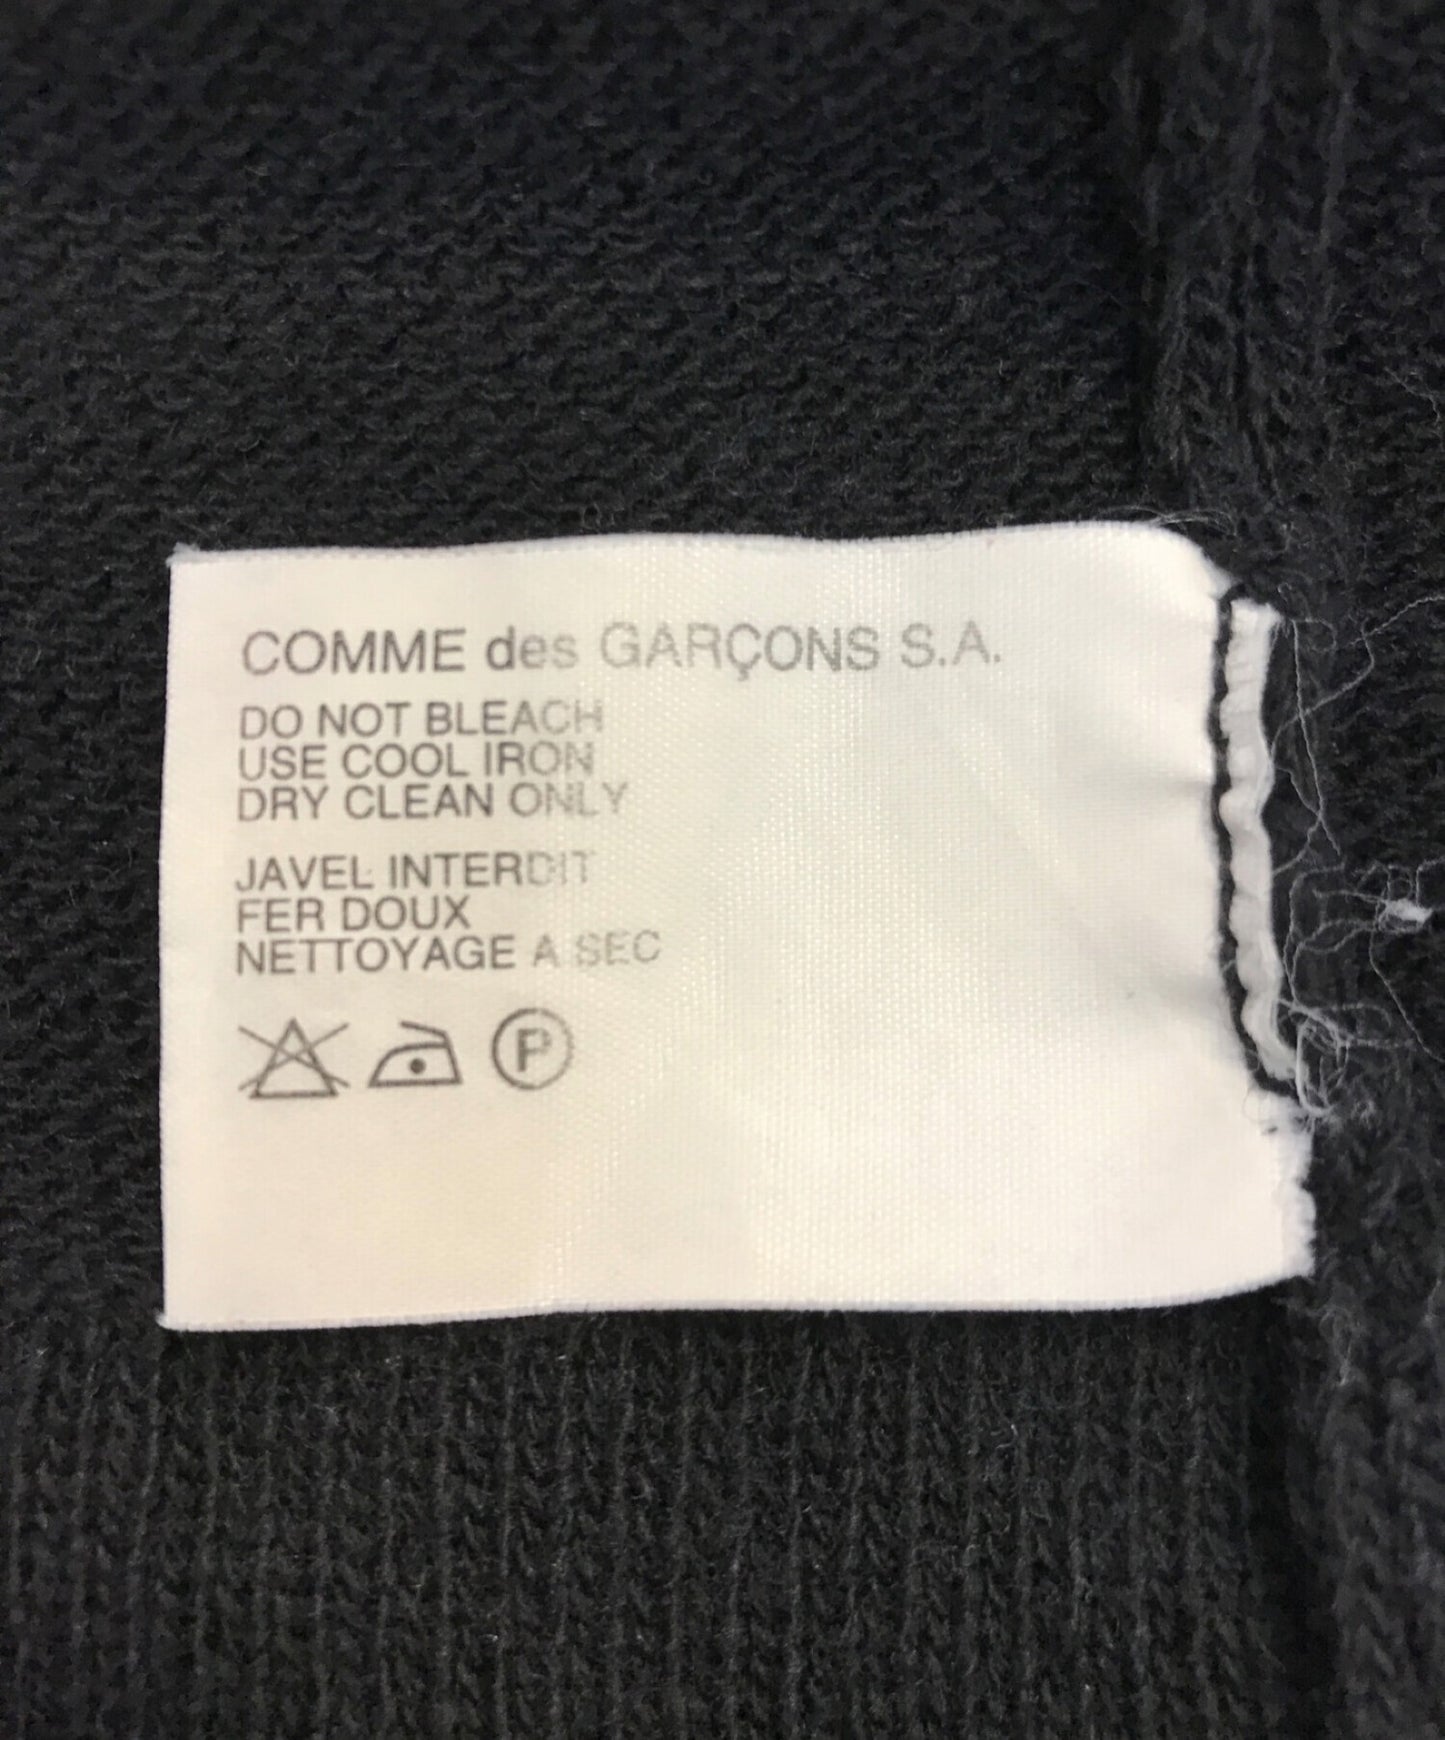 Comme des Garcons 셔츠 90 년대 프랑스 스퀘어 칼라 니트에서 만든 오래된 태그